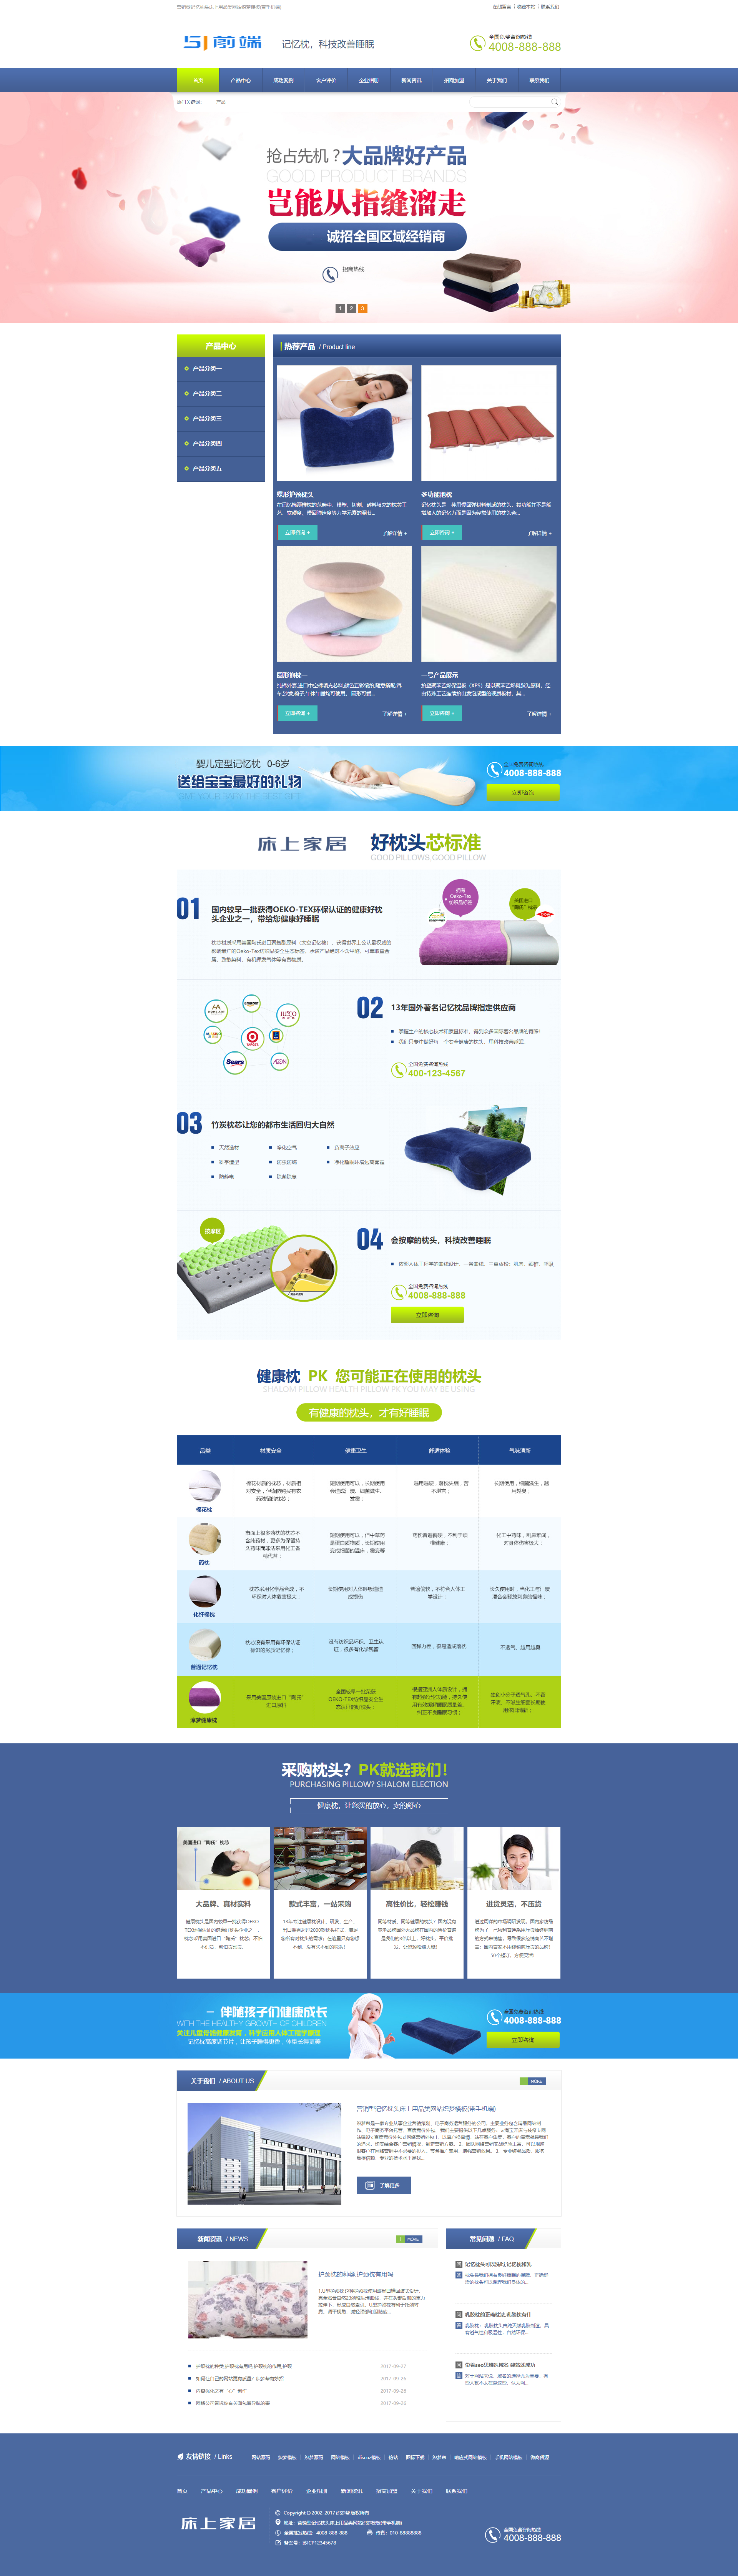 营销型织梦记忆枕头床上用品织梦网站模板(带手机端)